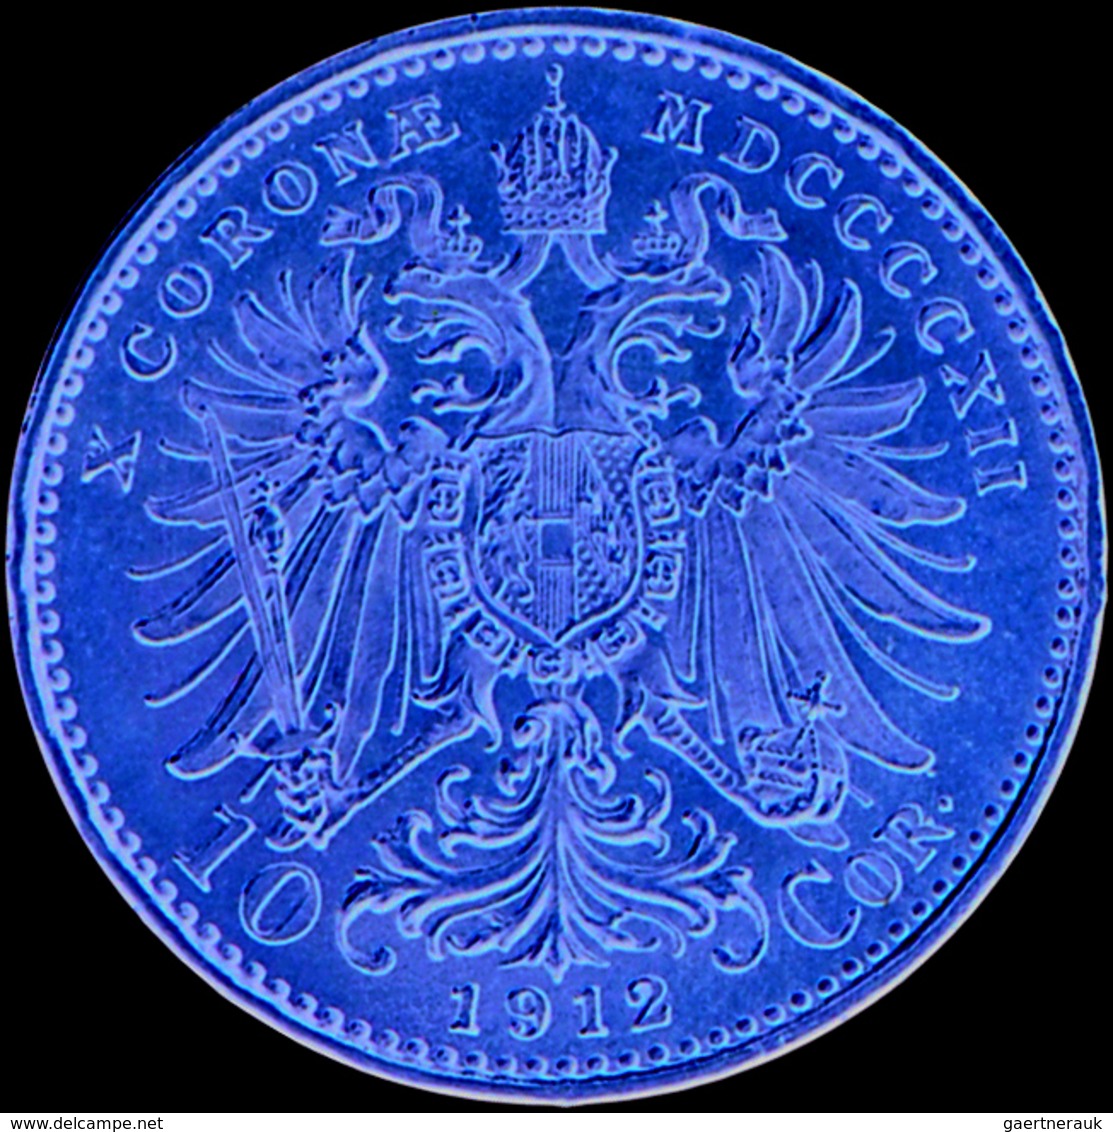 Österreich - Anlagegold: Franz Joseph I. 1848-1916: Lot 5 Goldmünzen: 4 Fl/10 Fr 1892, schön; 8 Fl/2